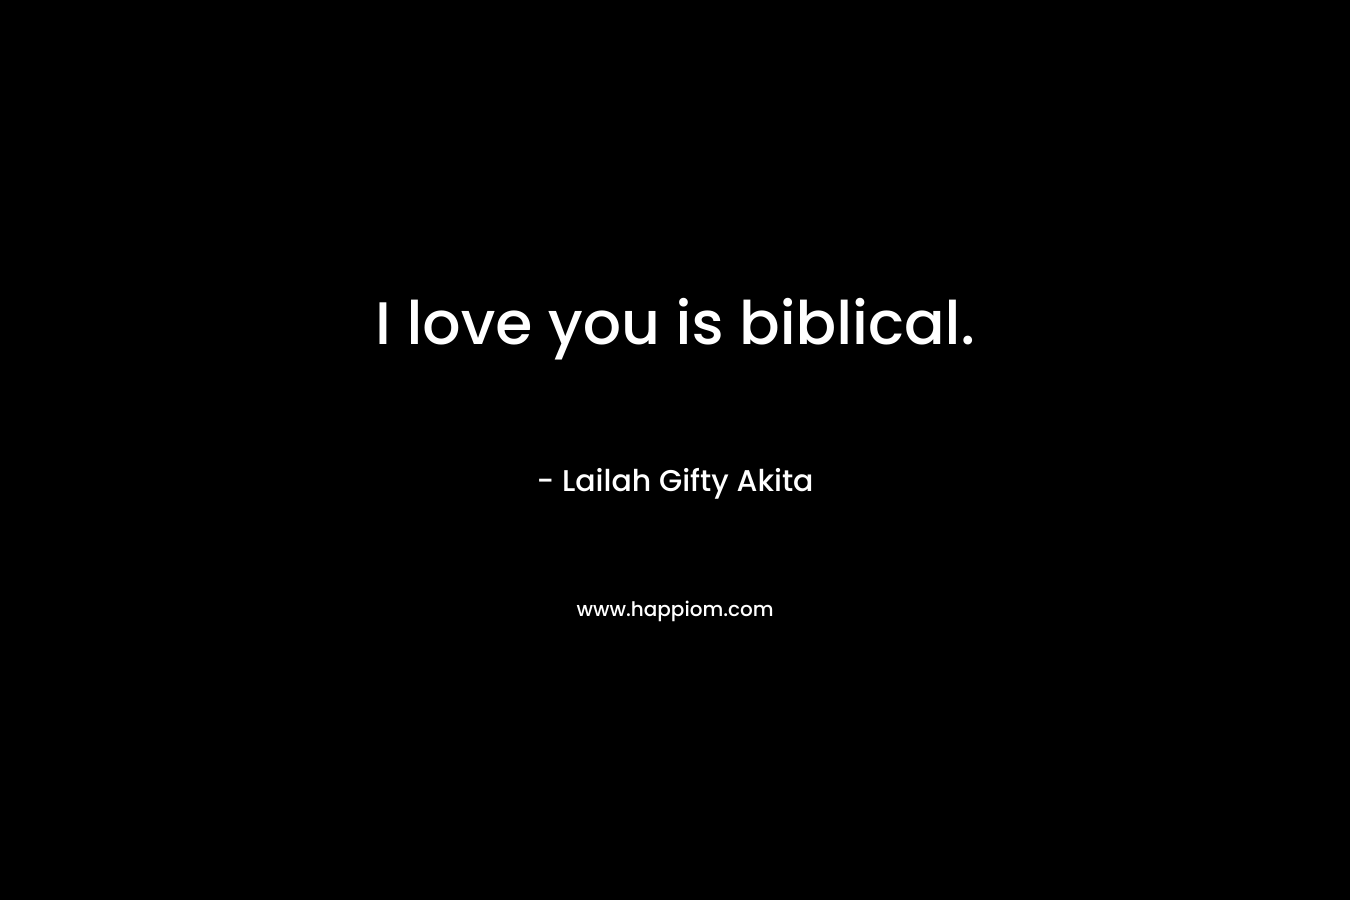 I love you is biblical.